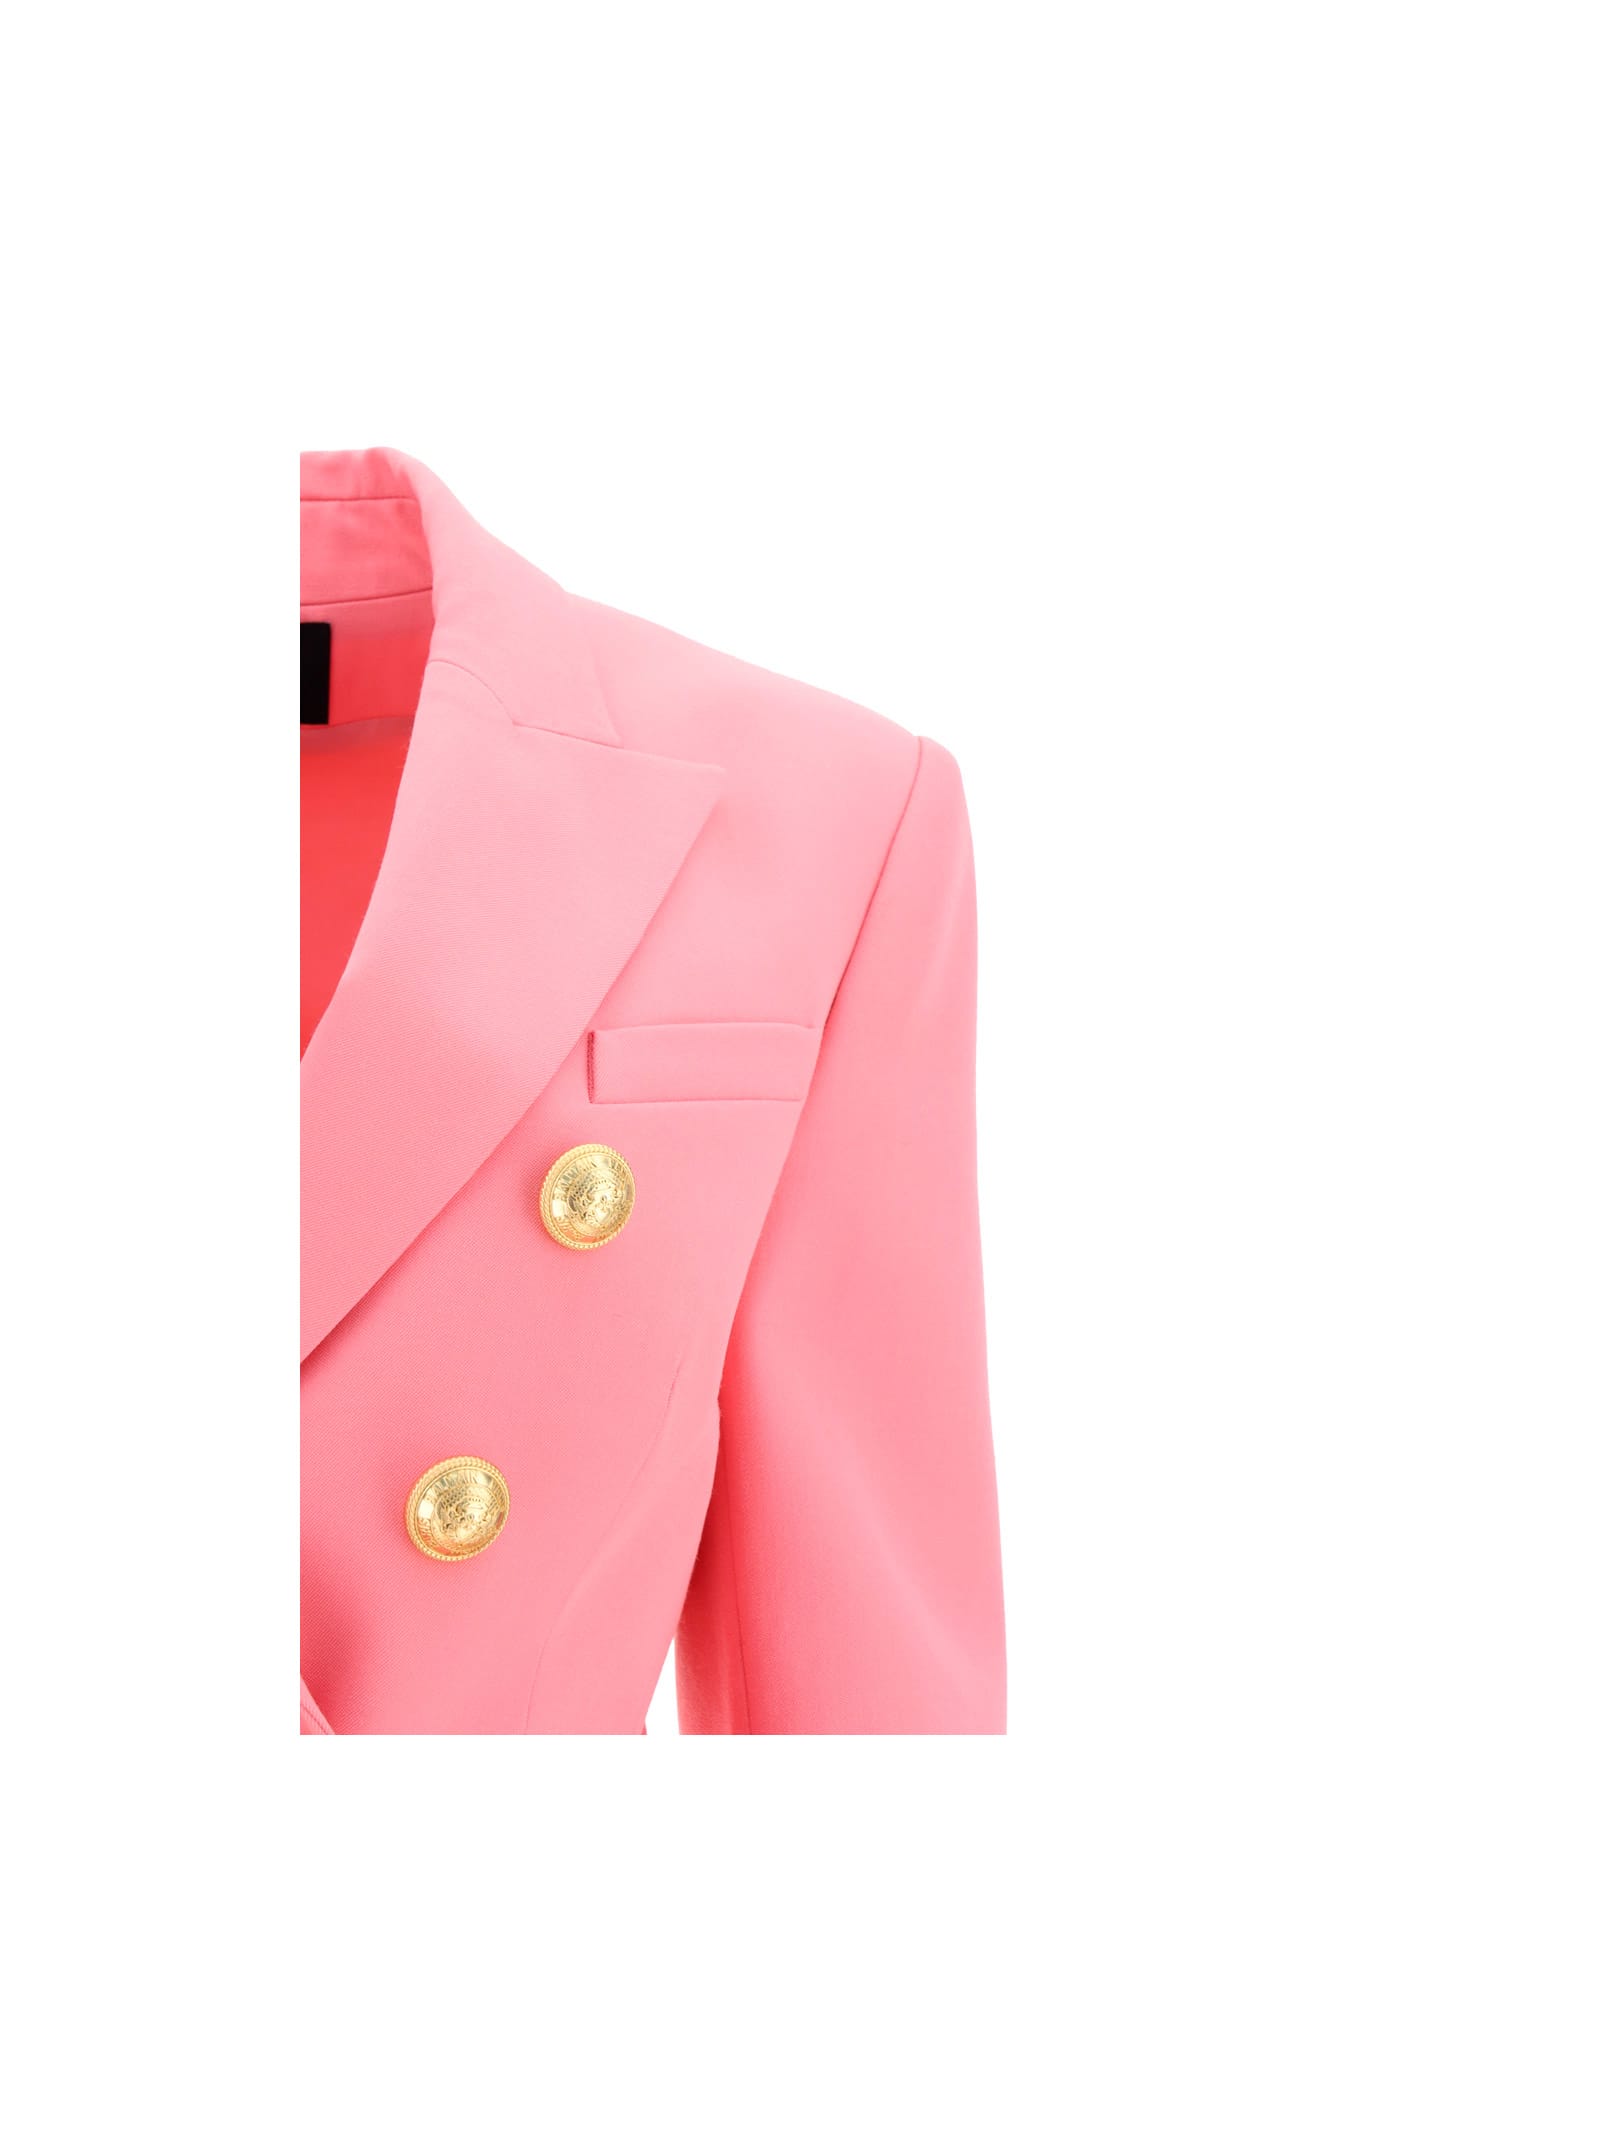 Balmain Jacket In Rose